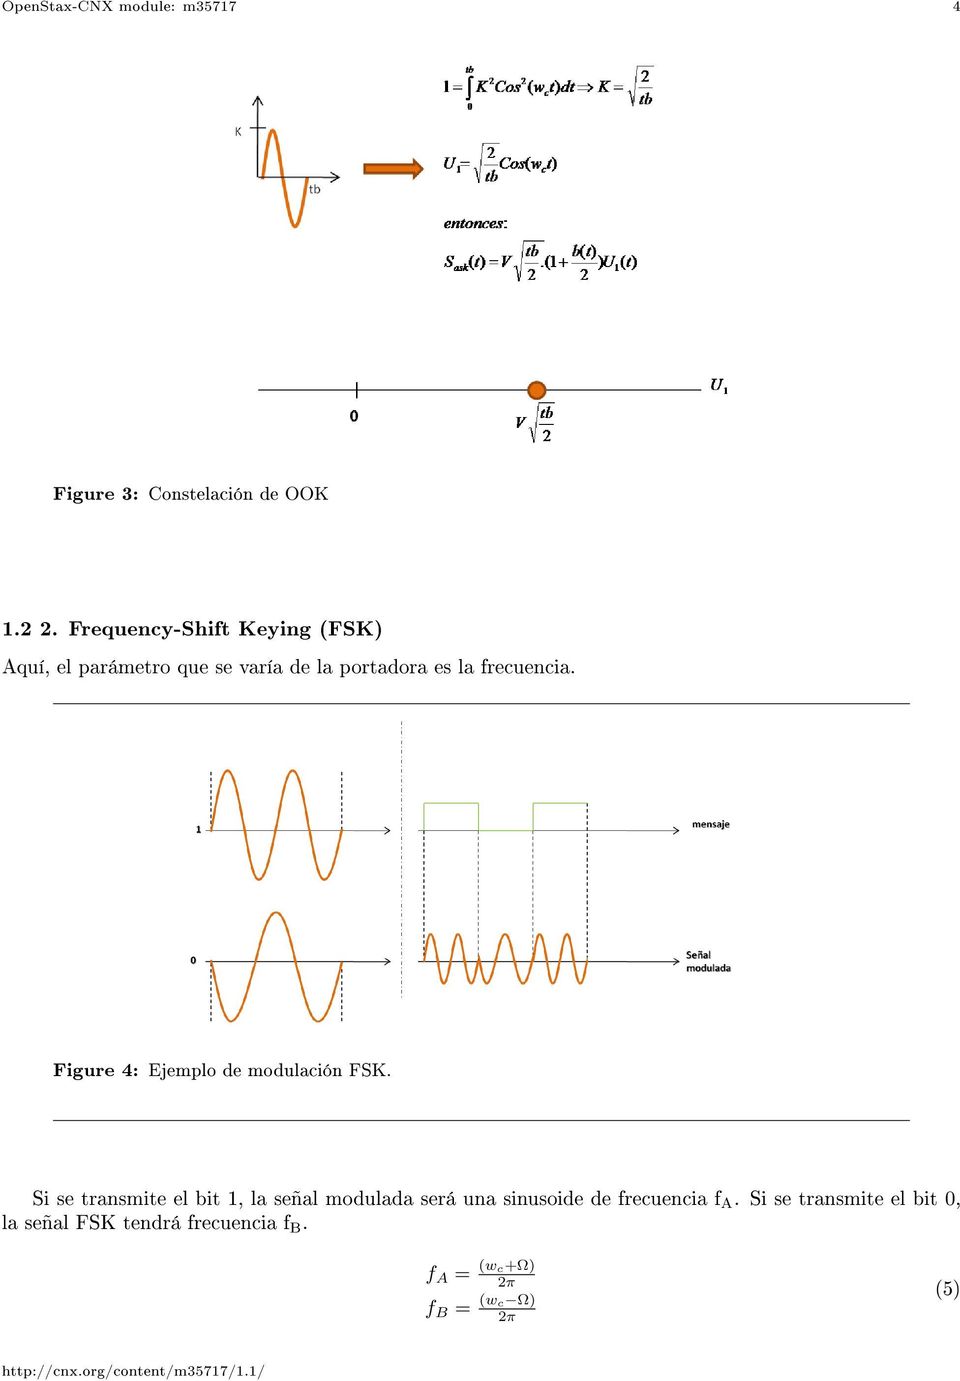 Figure 4: Ejemplo de modulación FSK.